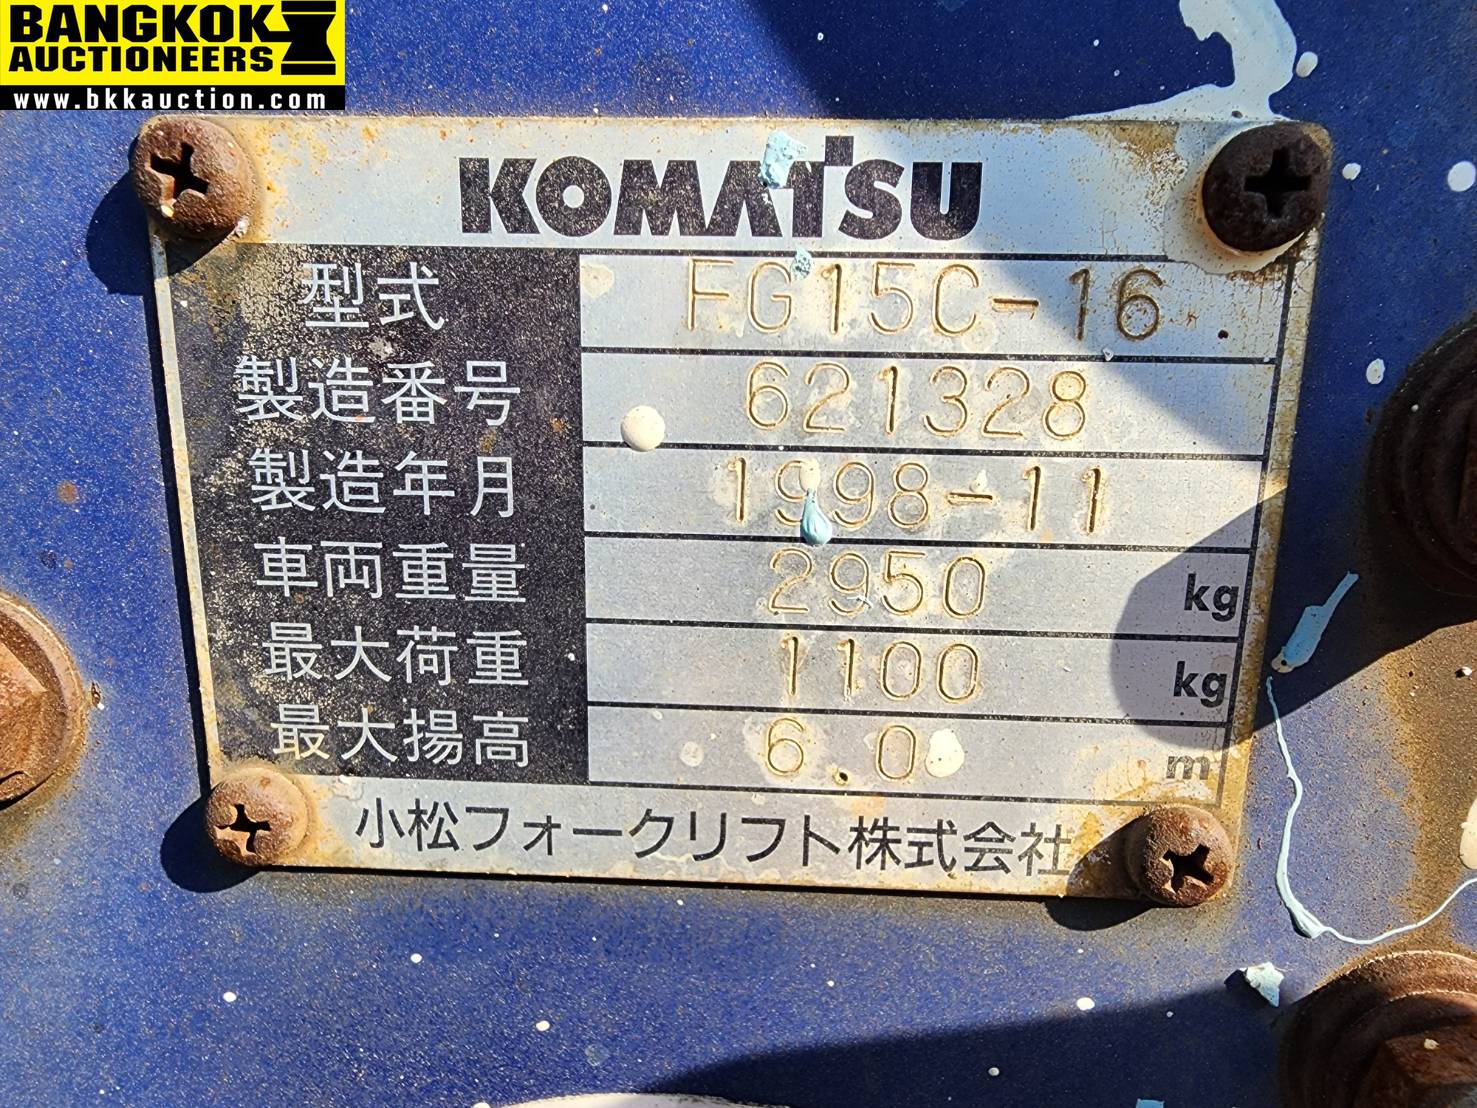 รถยก KOMATSU-FG15C-16-621328